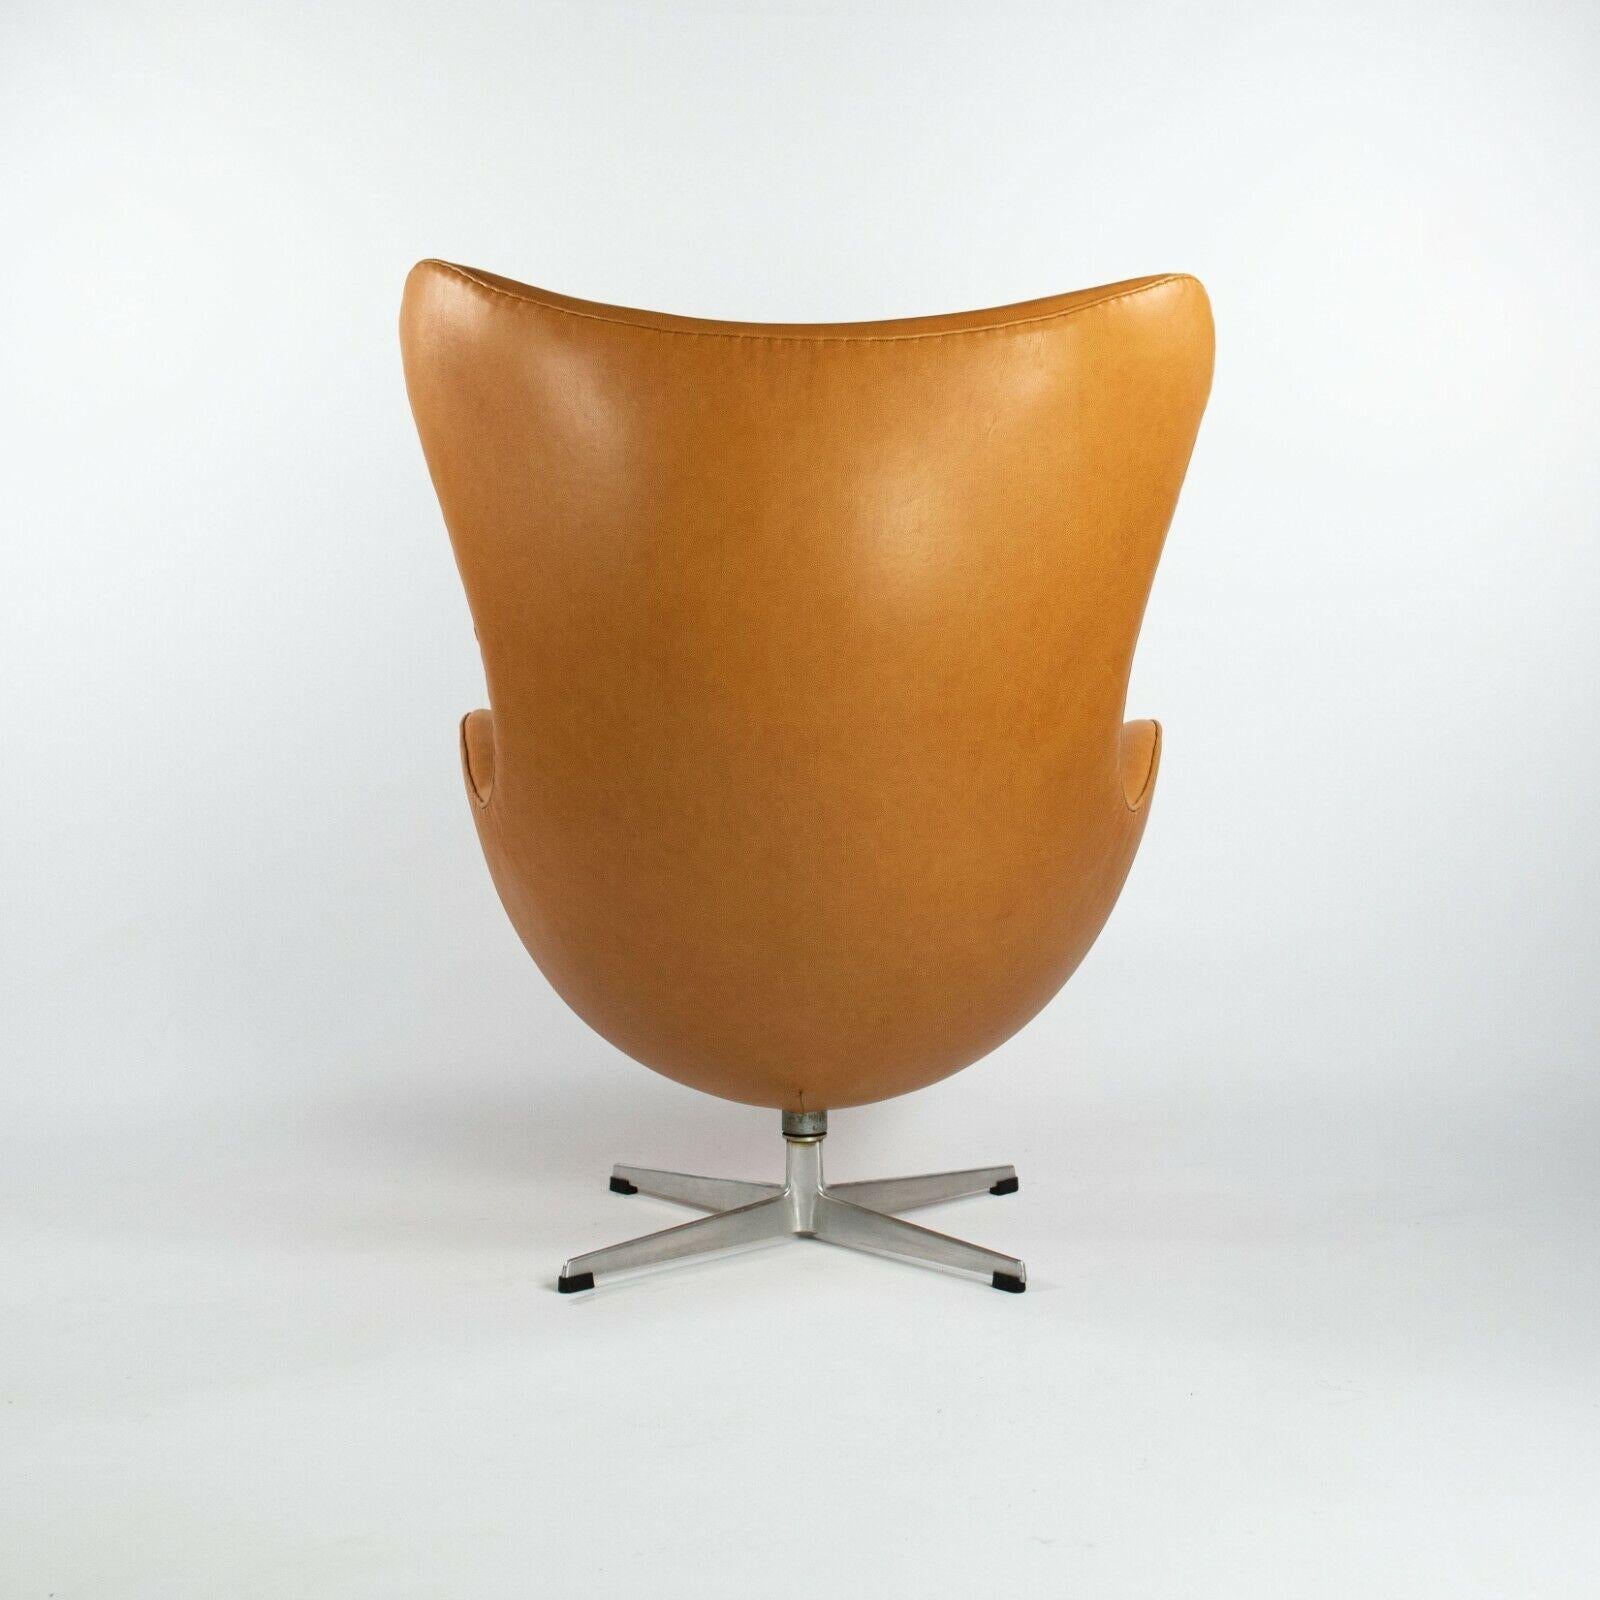 Danish 1959 Arne Jacobsen for Fritz Hansen Egg Chair & Ottoman in Tan / Cognac Leather For Sale